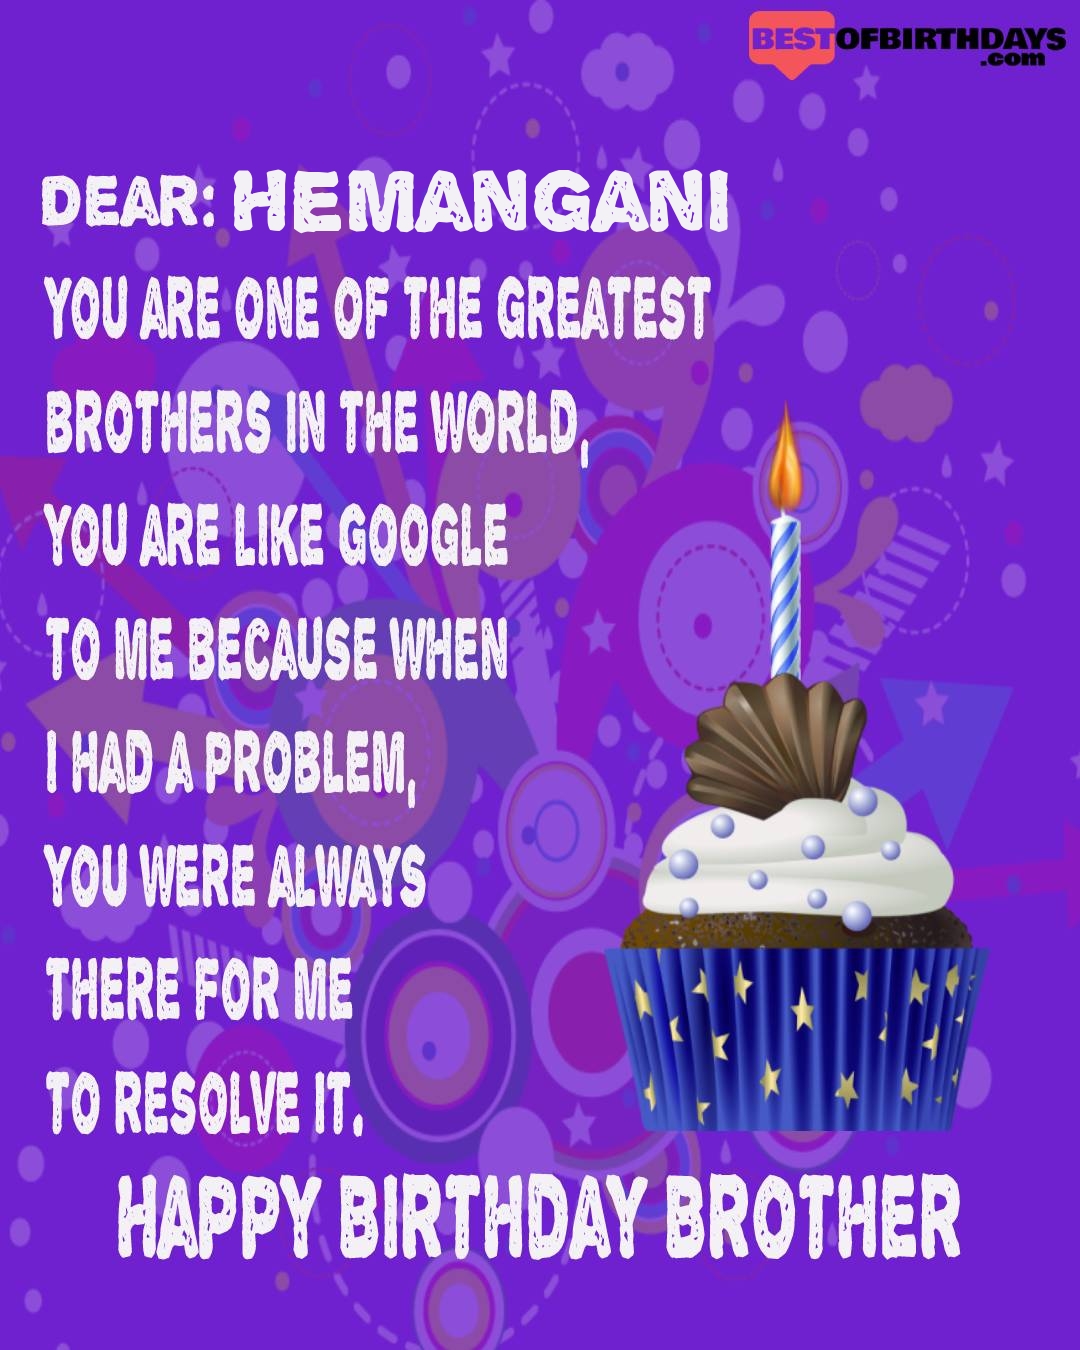 Happy birthday hemangani bhai brother bro